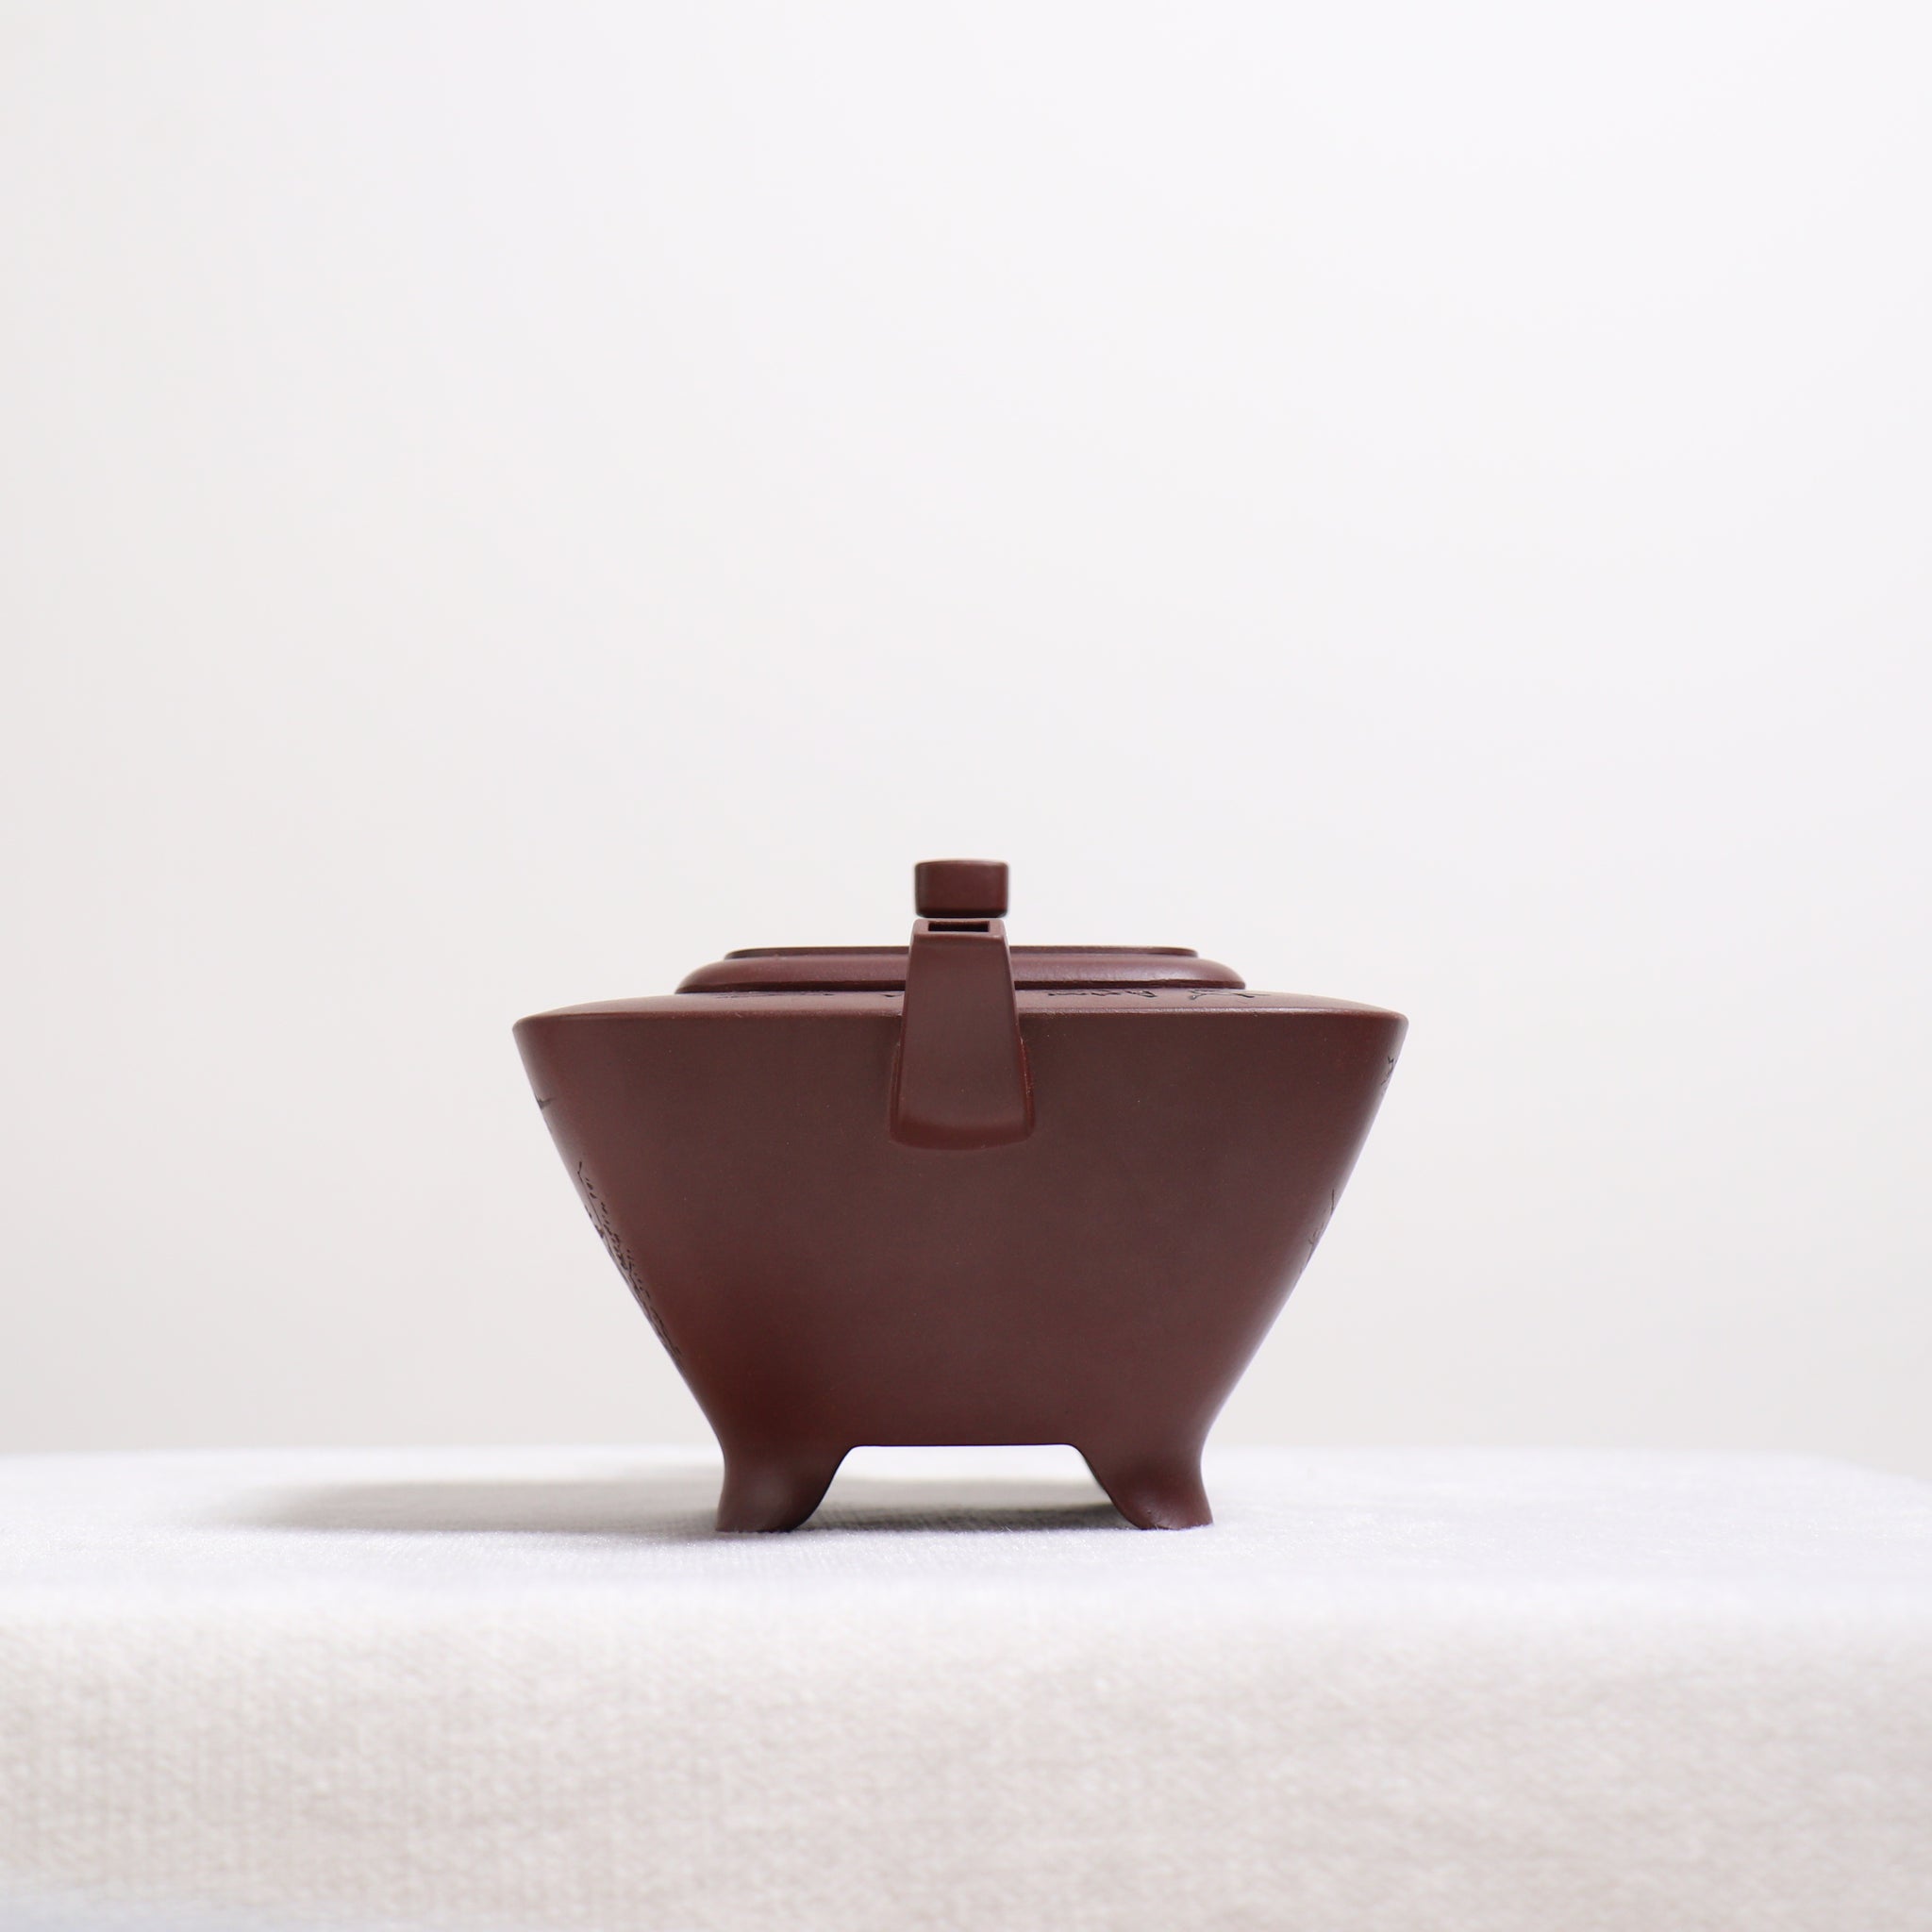 【斗方】底槽青書法紫砂茶壺